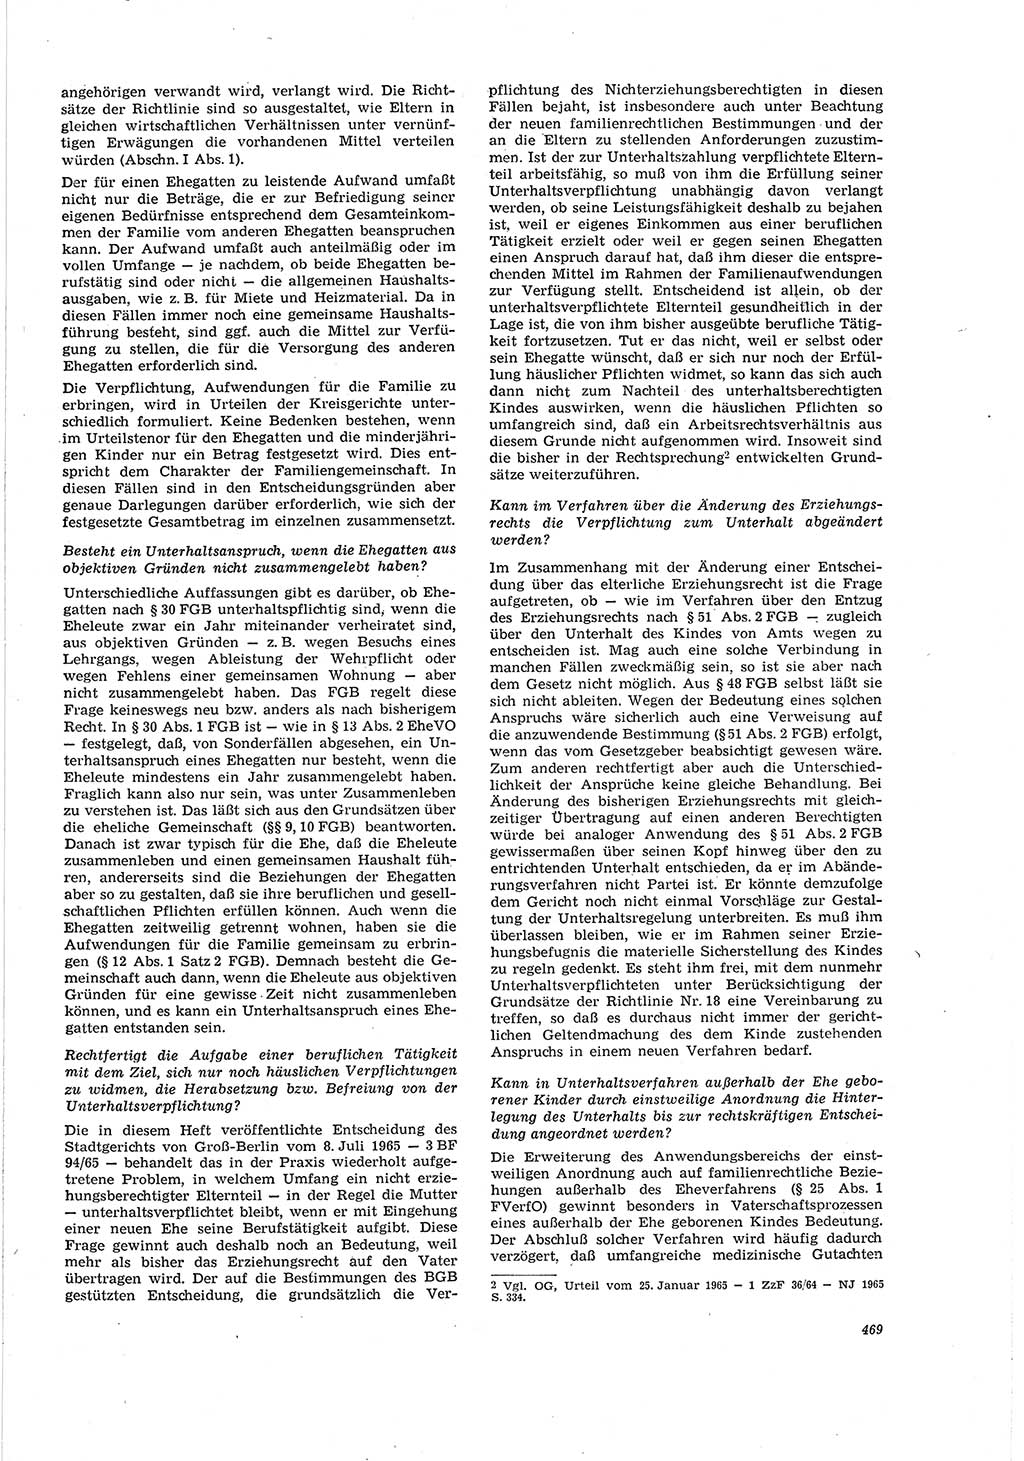 Neue Justiz (NJ), Zeitschrift für Recht und Rechtswissenschaft [Deutsche Demokratische Republik (DDR)], 20. Jahrgang 1966, Seite 469 (NJ DDR 1966, S. 469)